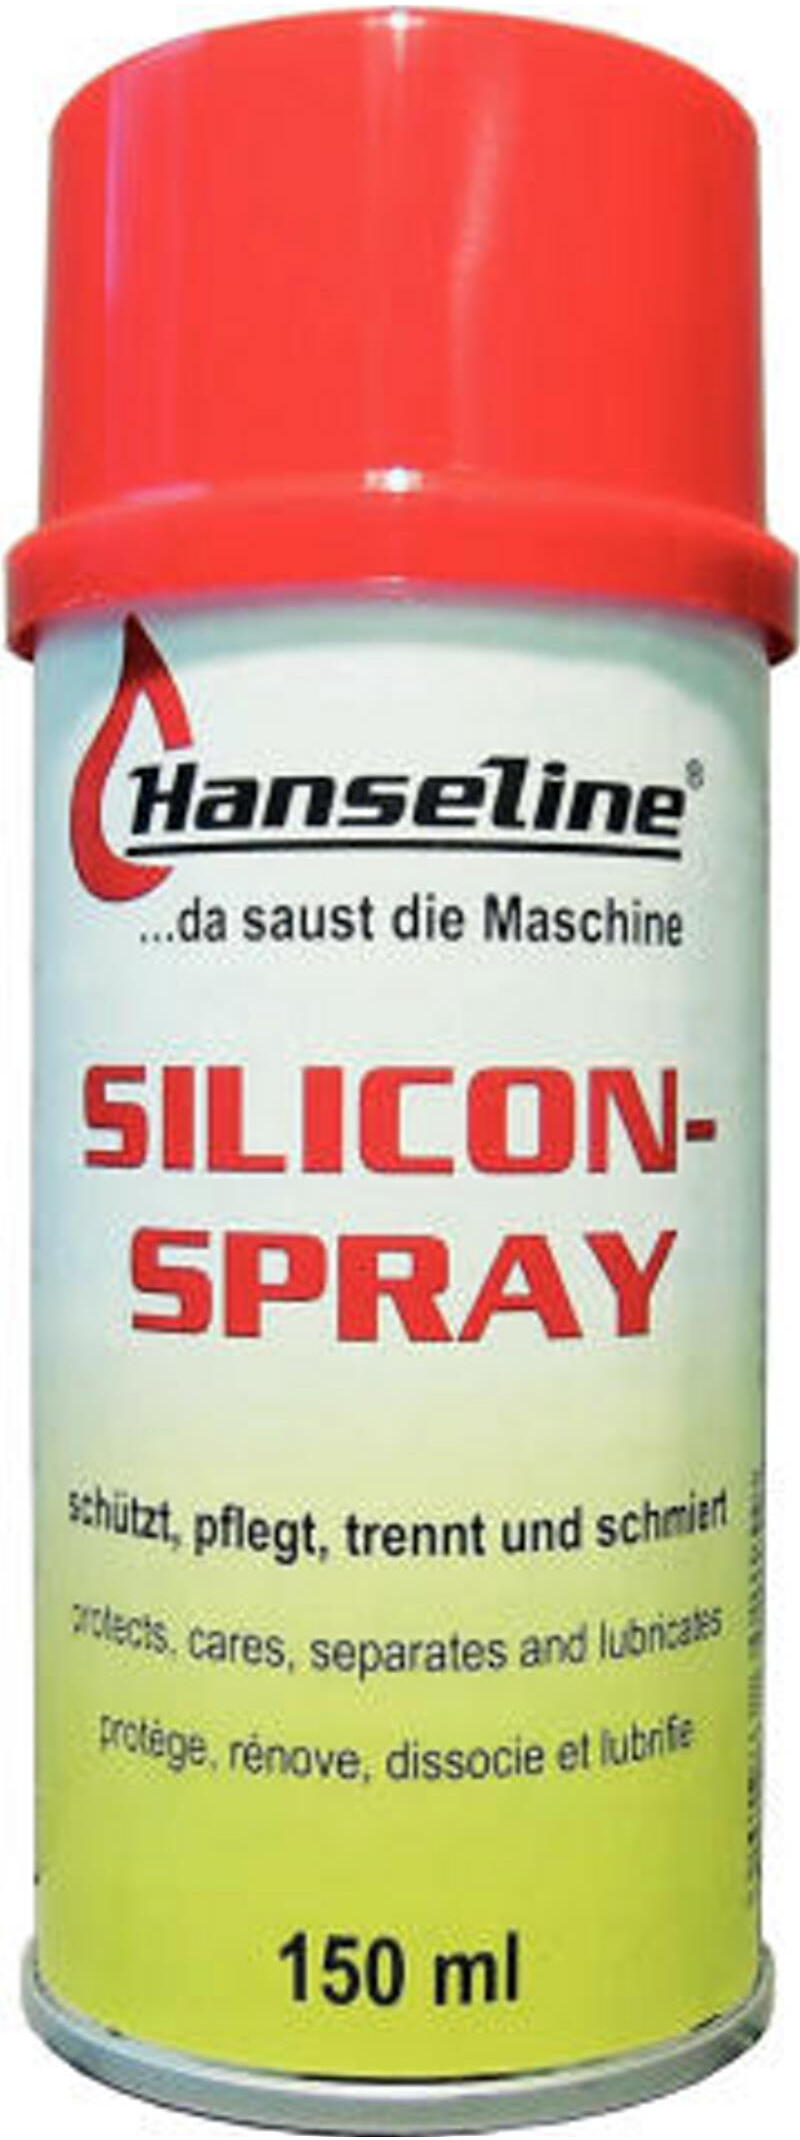 Hanseline Silicon-Spray 150ml Größe: 150 ml